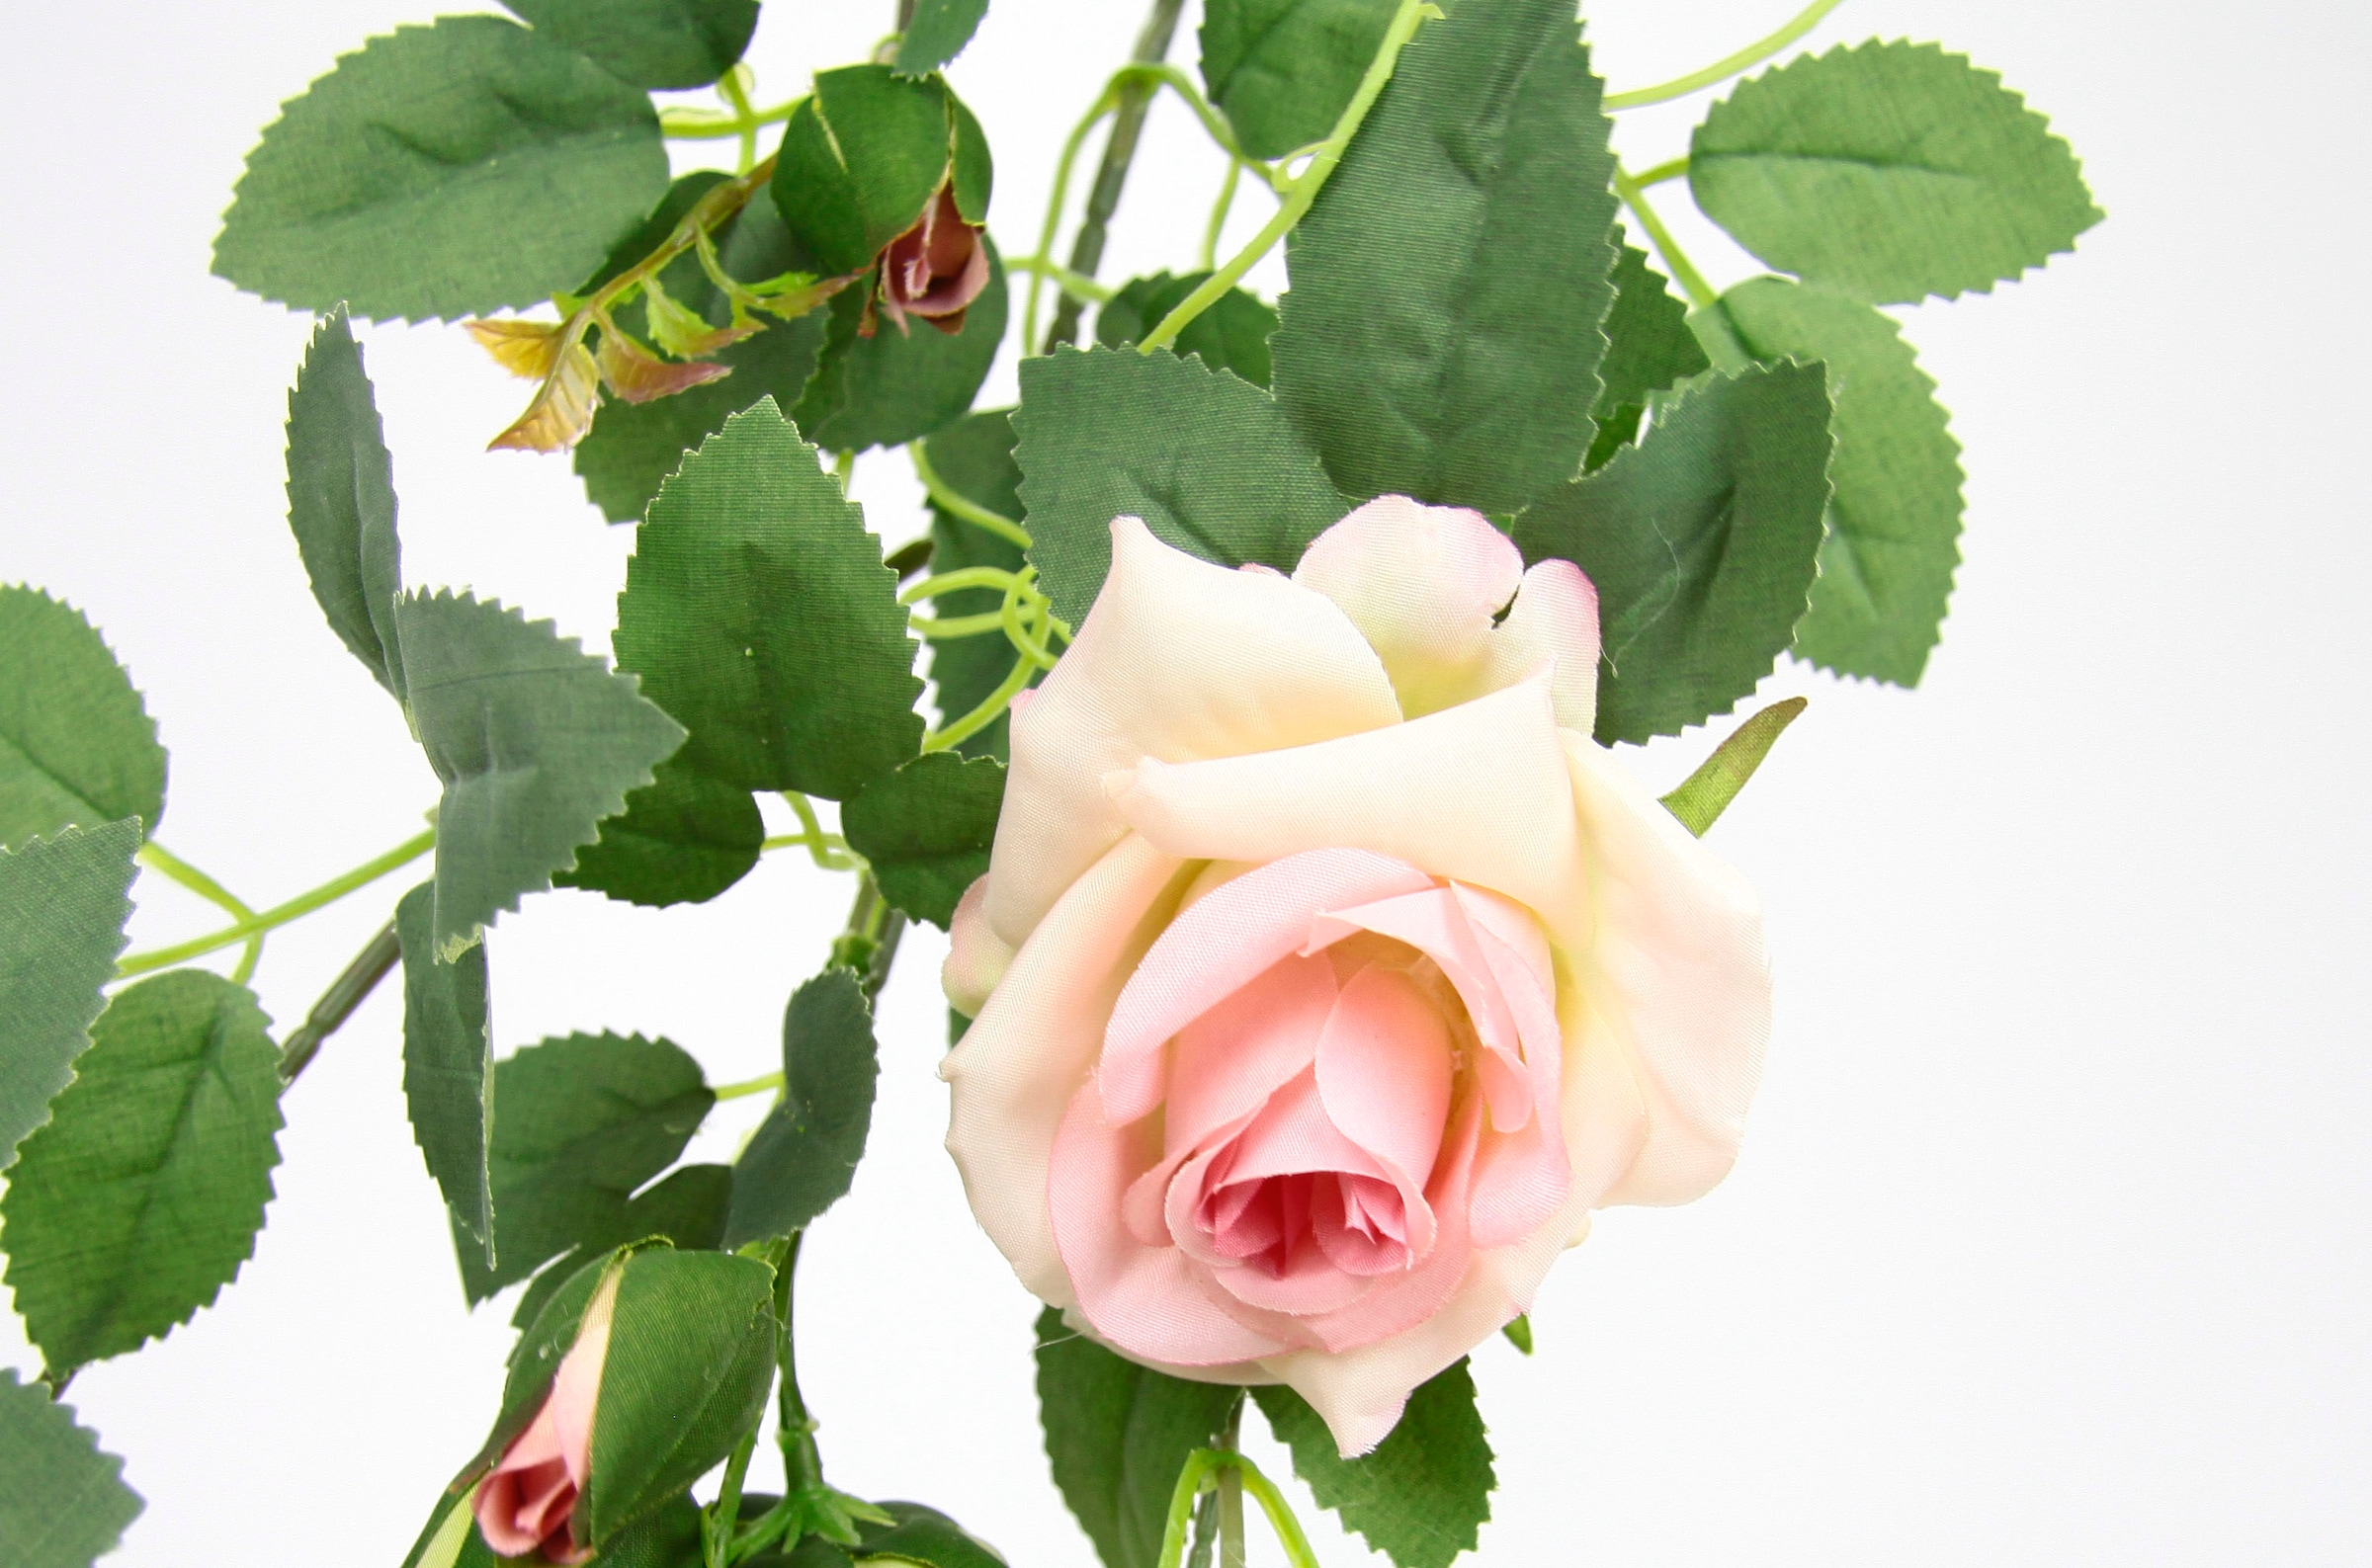 I.GE.A. Kunstblume »Rosenranke«, Künstlich Rosengirlande Kunstblumen  hängend Hochzeit Weihnachten kaufen | BAUR